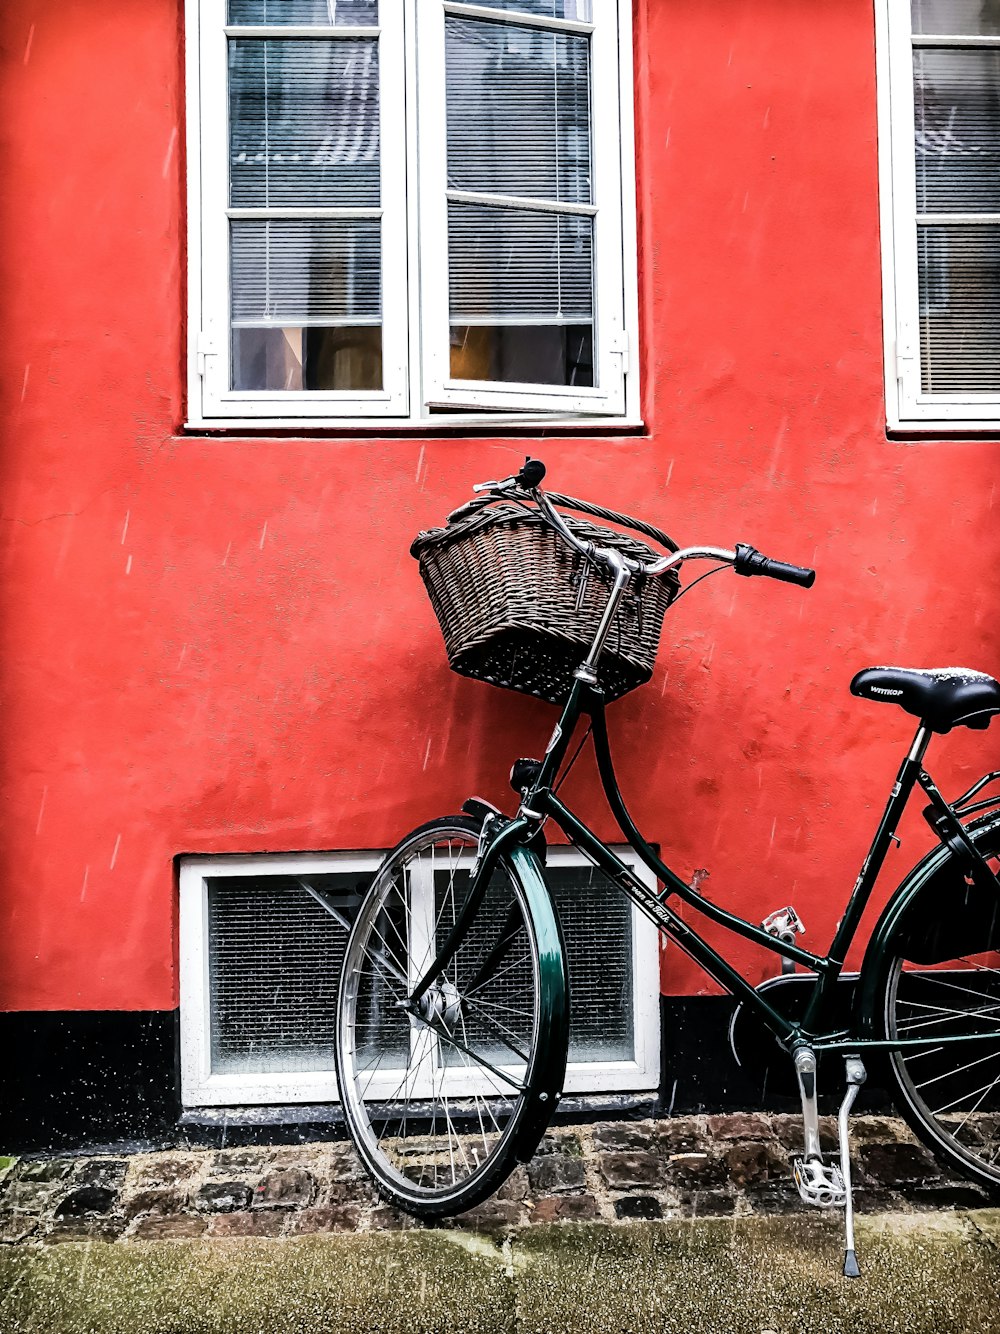 bicicleta cruiser preta ao lado da parede vermelha